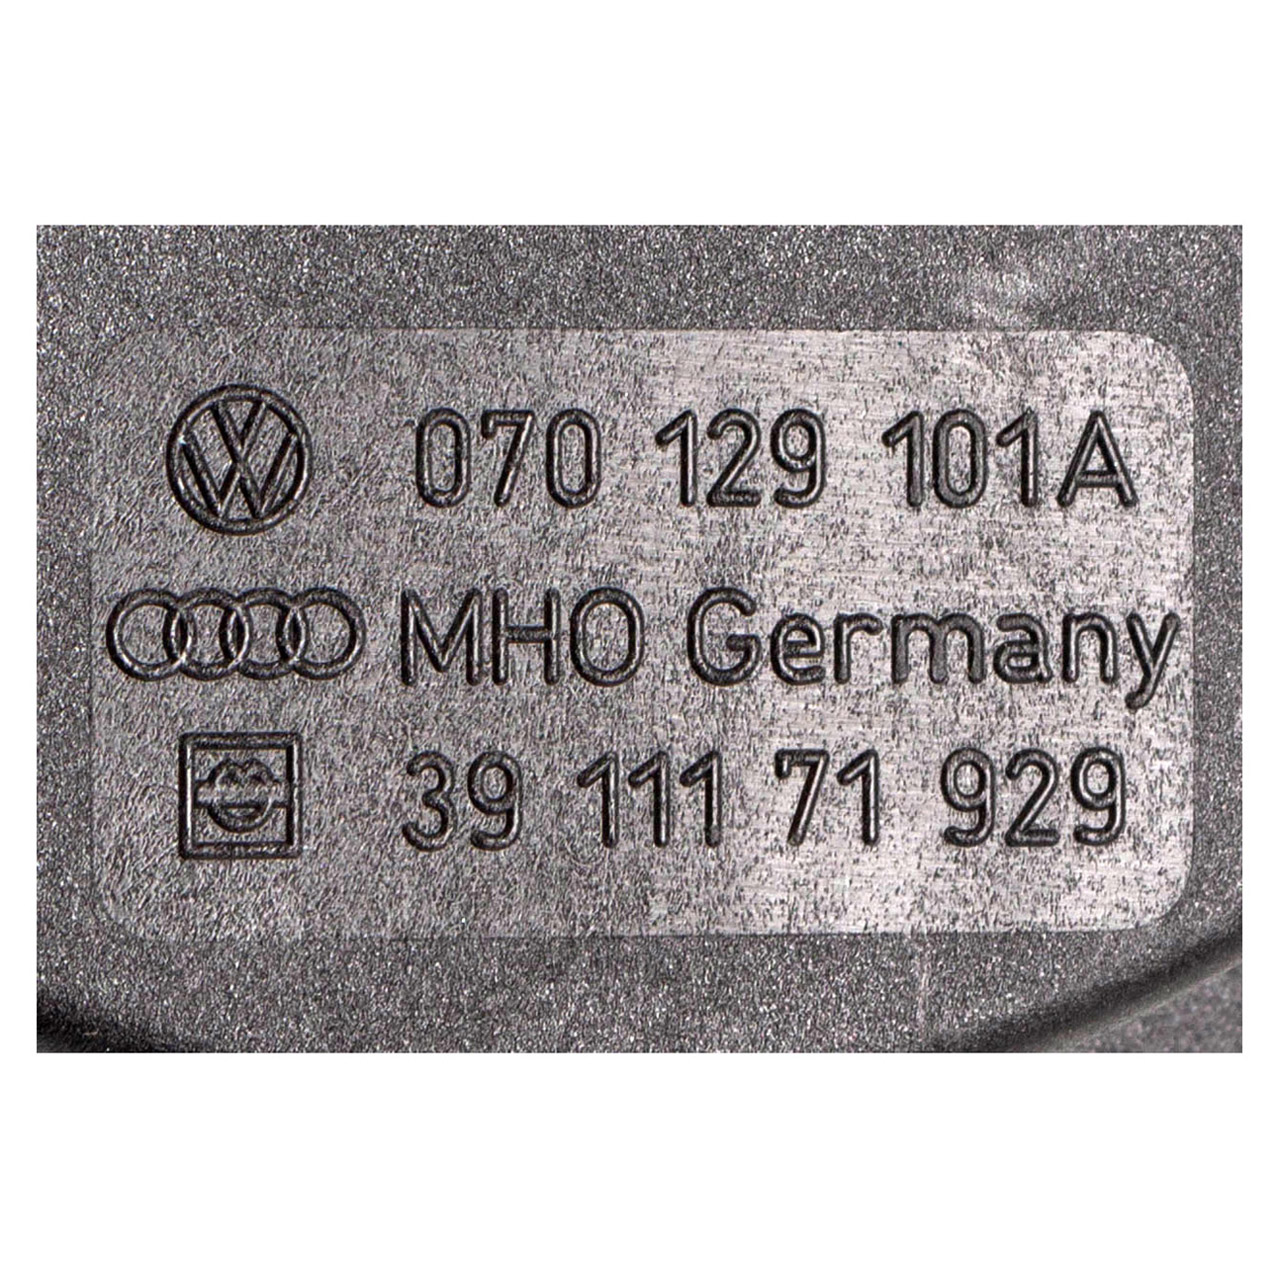 ORIGINAL VW Druckregelventil Kurbelgehäuseentlüftung T5 Touareg 2.5 TDI 070129101A